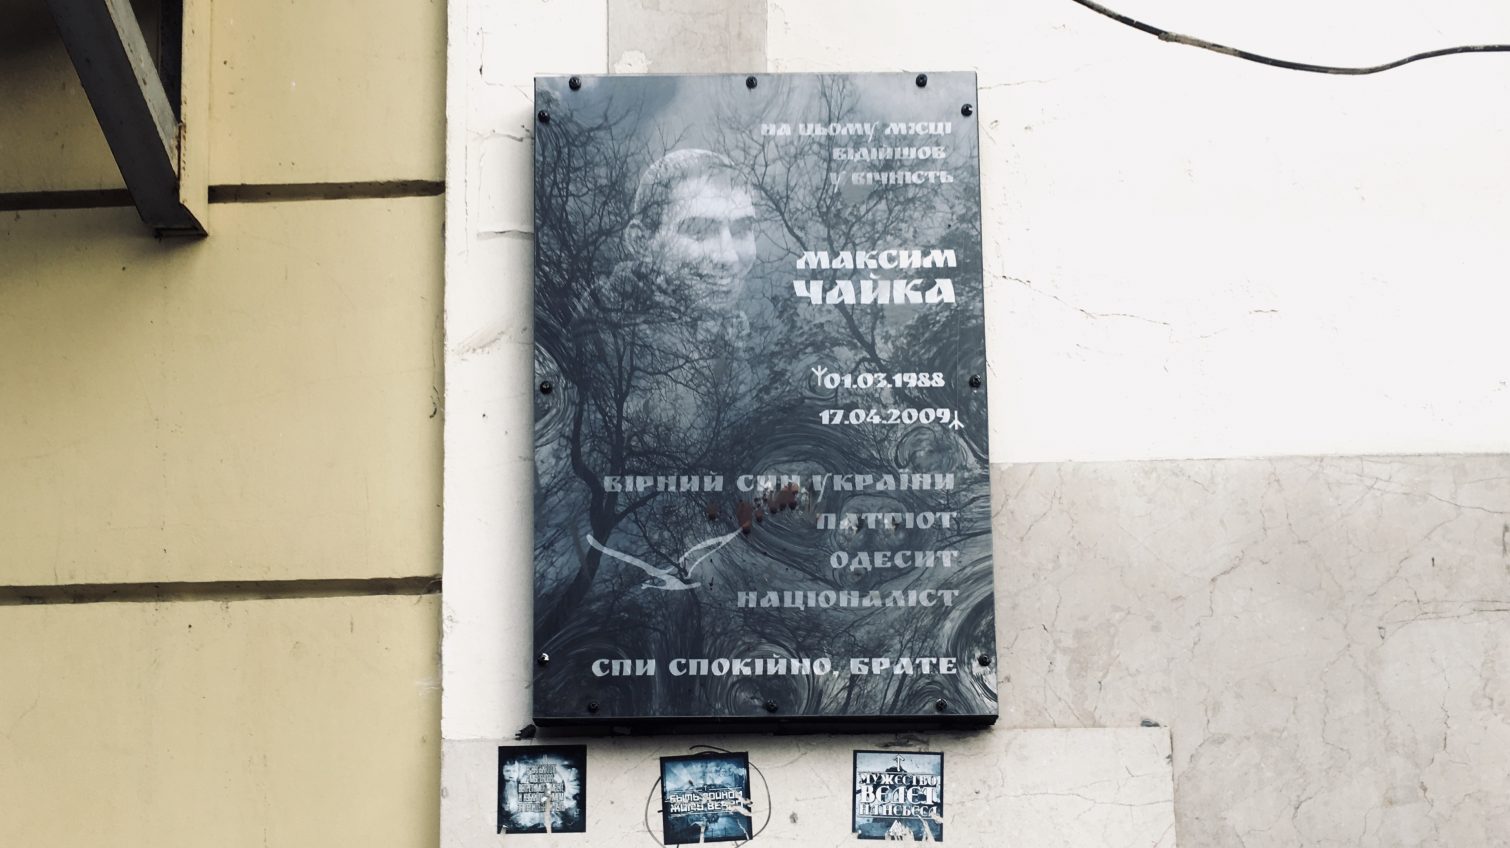 Вандалы повредили памятную доску Максиму Чайке в Одессе (фото) «фото»